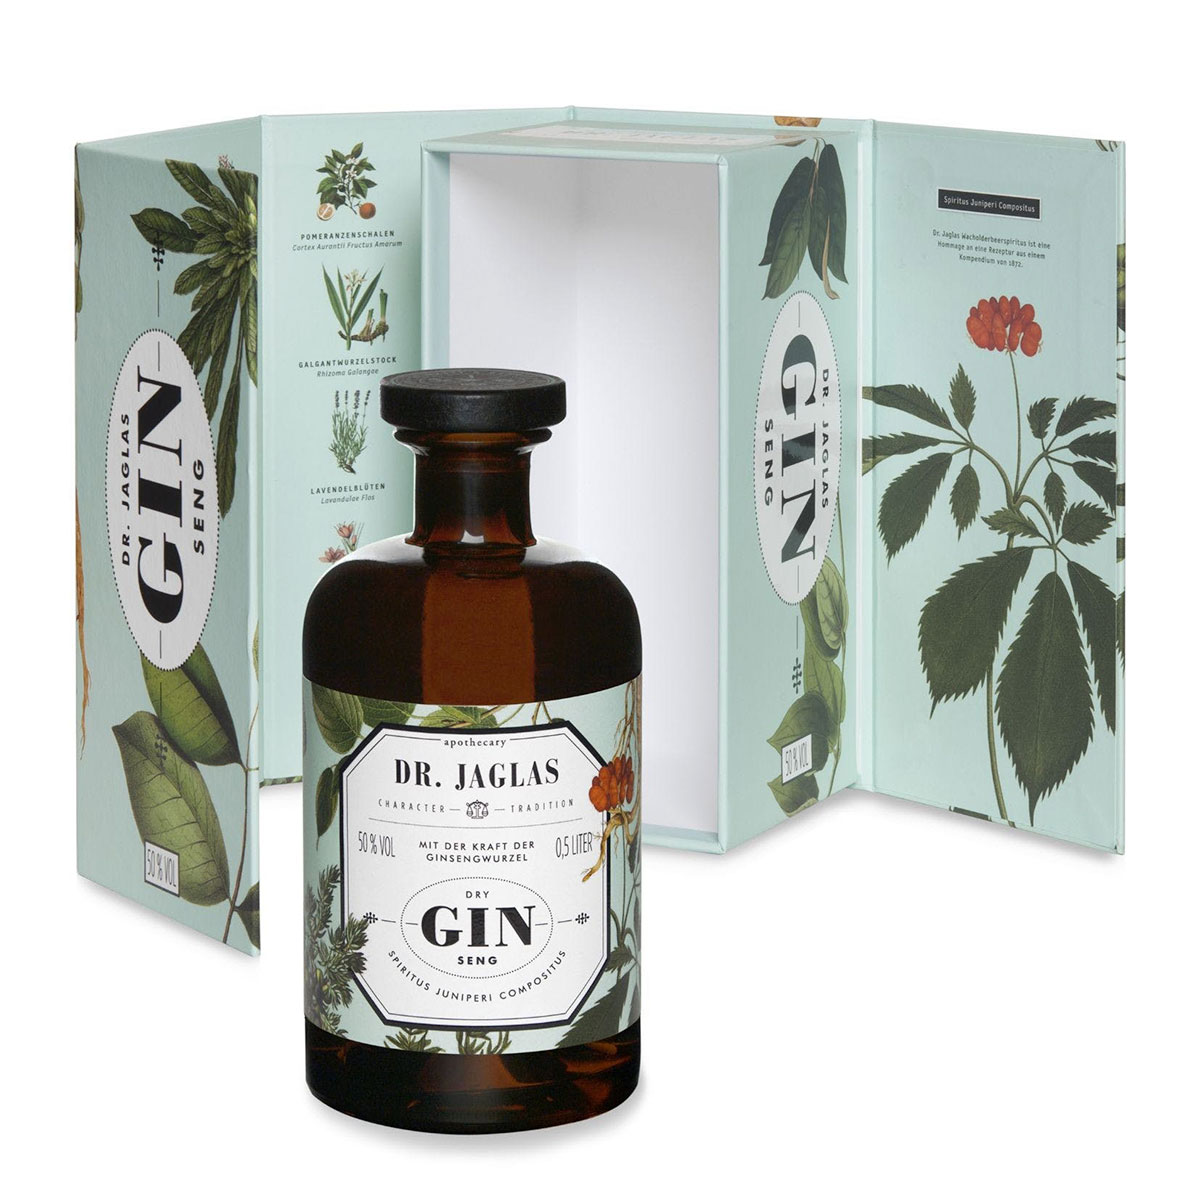 Dry Gin-Seng (Navy Gin), Dr. Jaglas 0,5l 50% Vol.